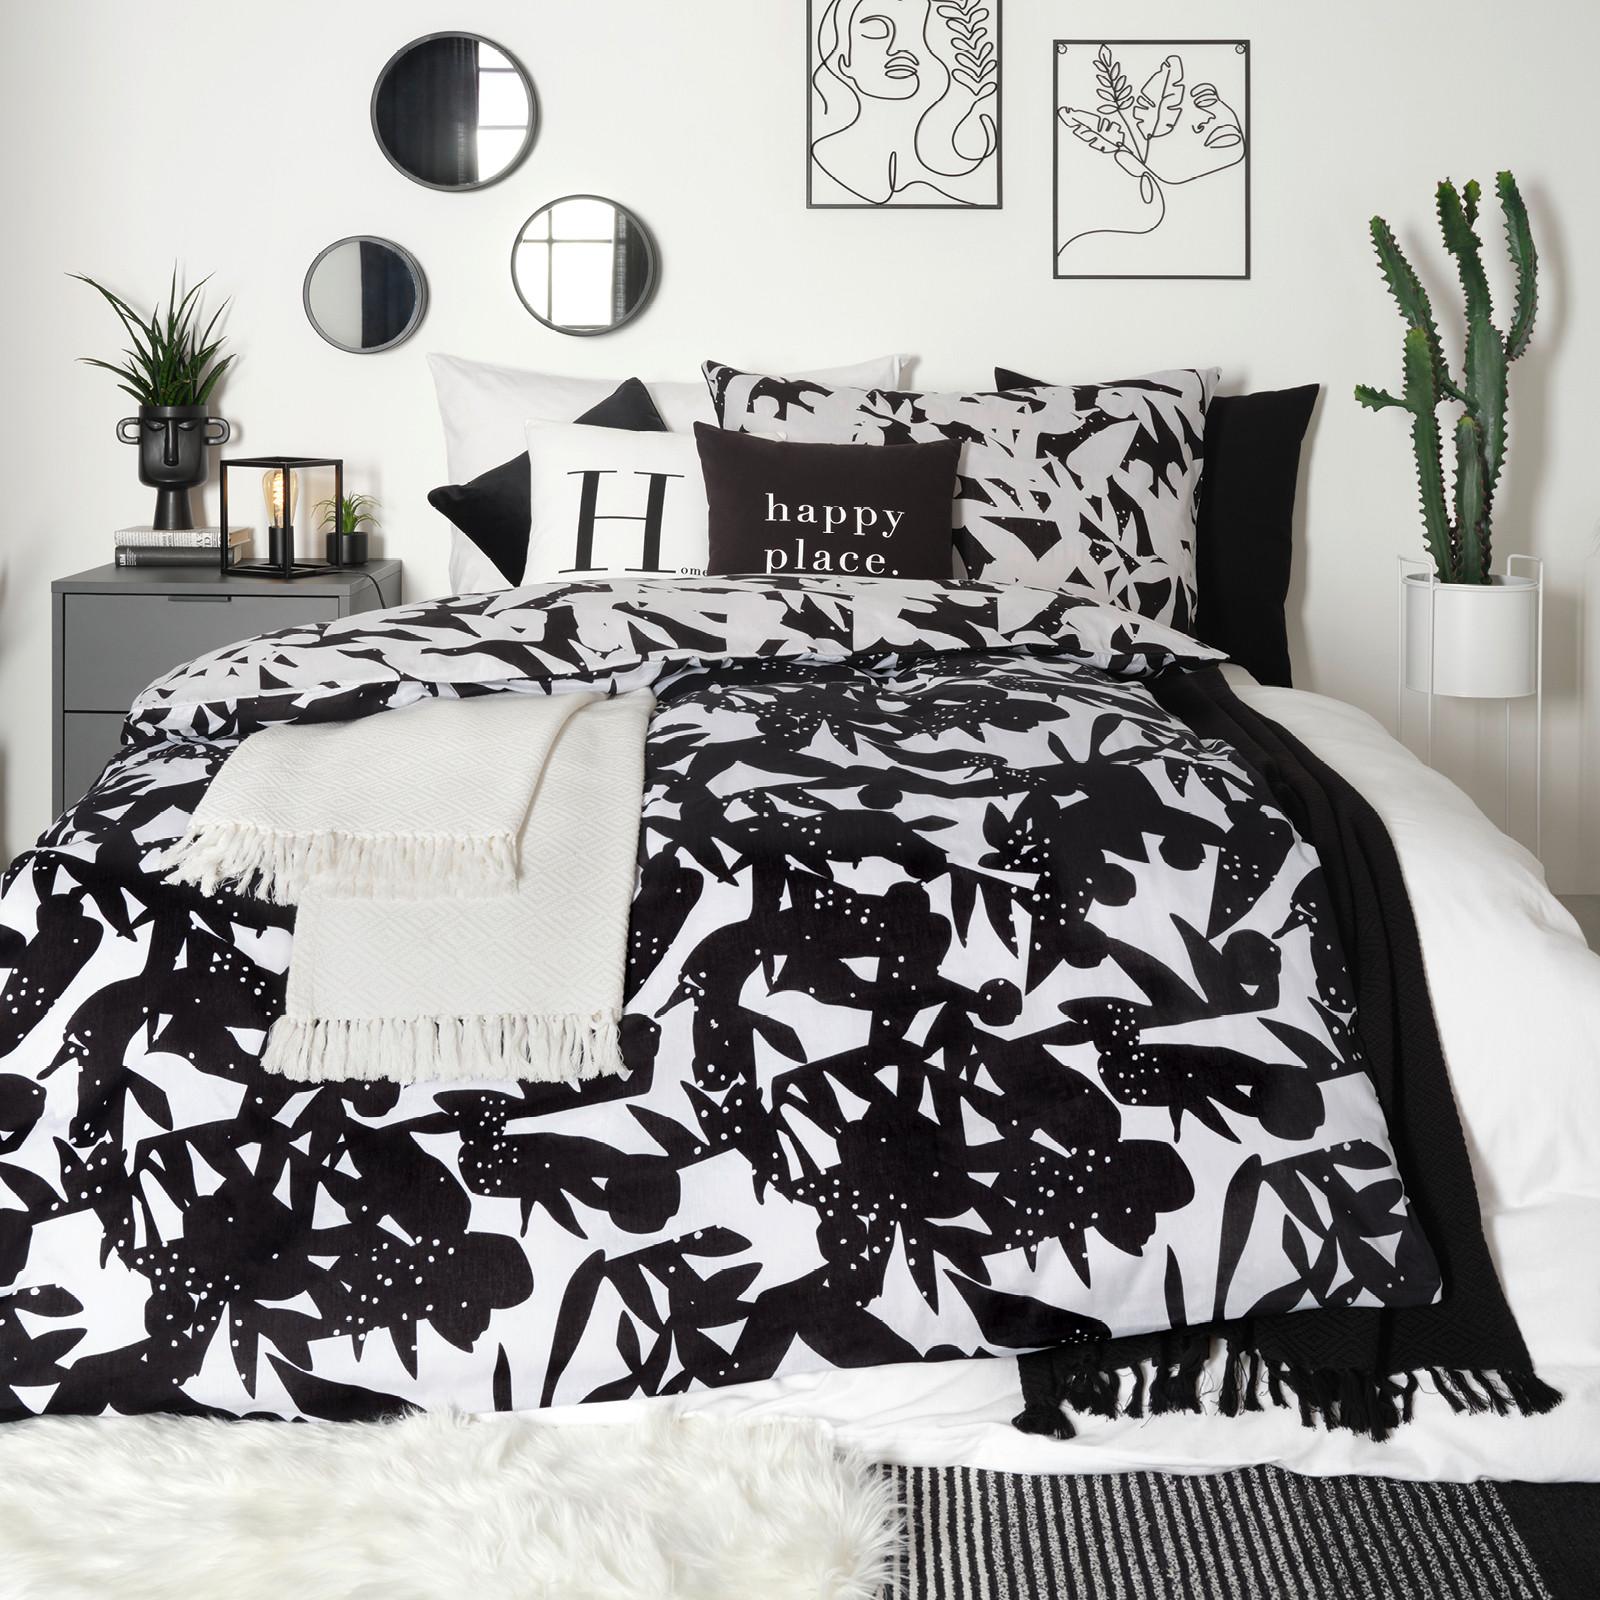 vzorované černo-bílé ložní prádlo, textil do ložnice